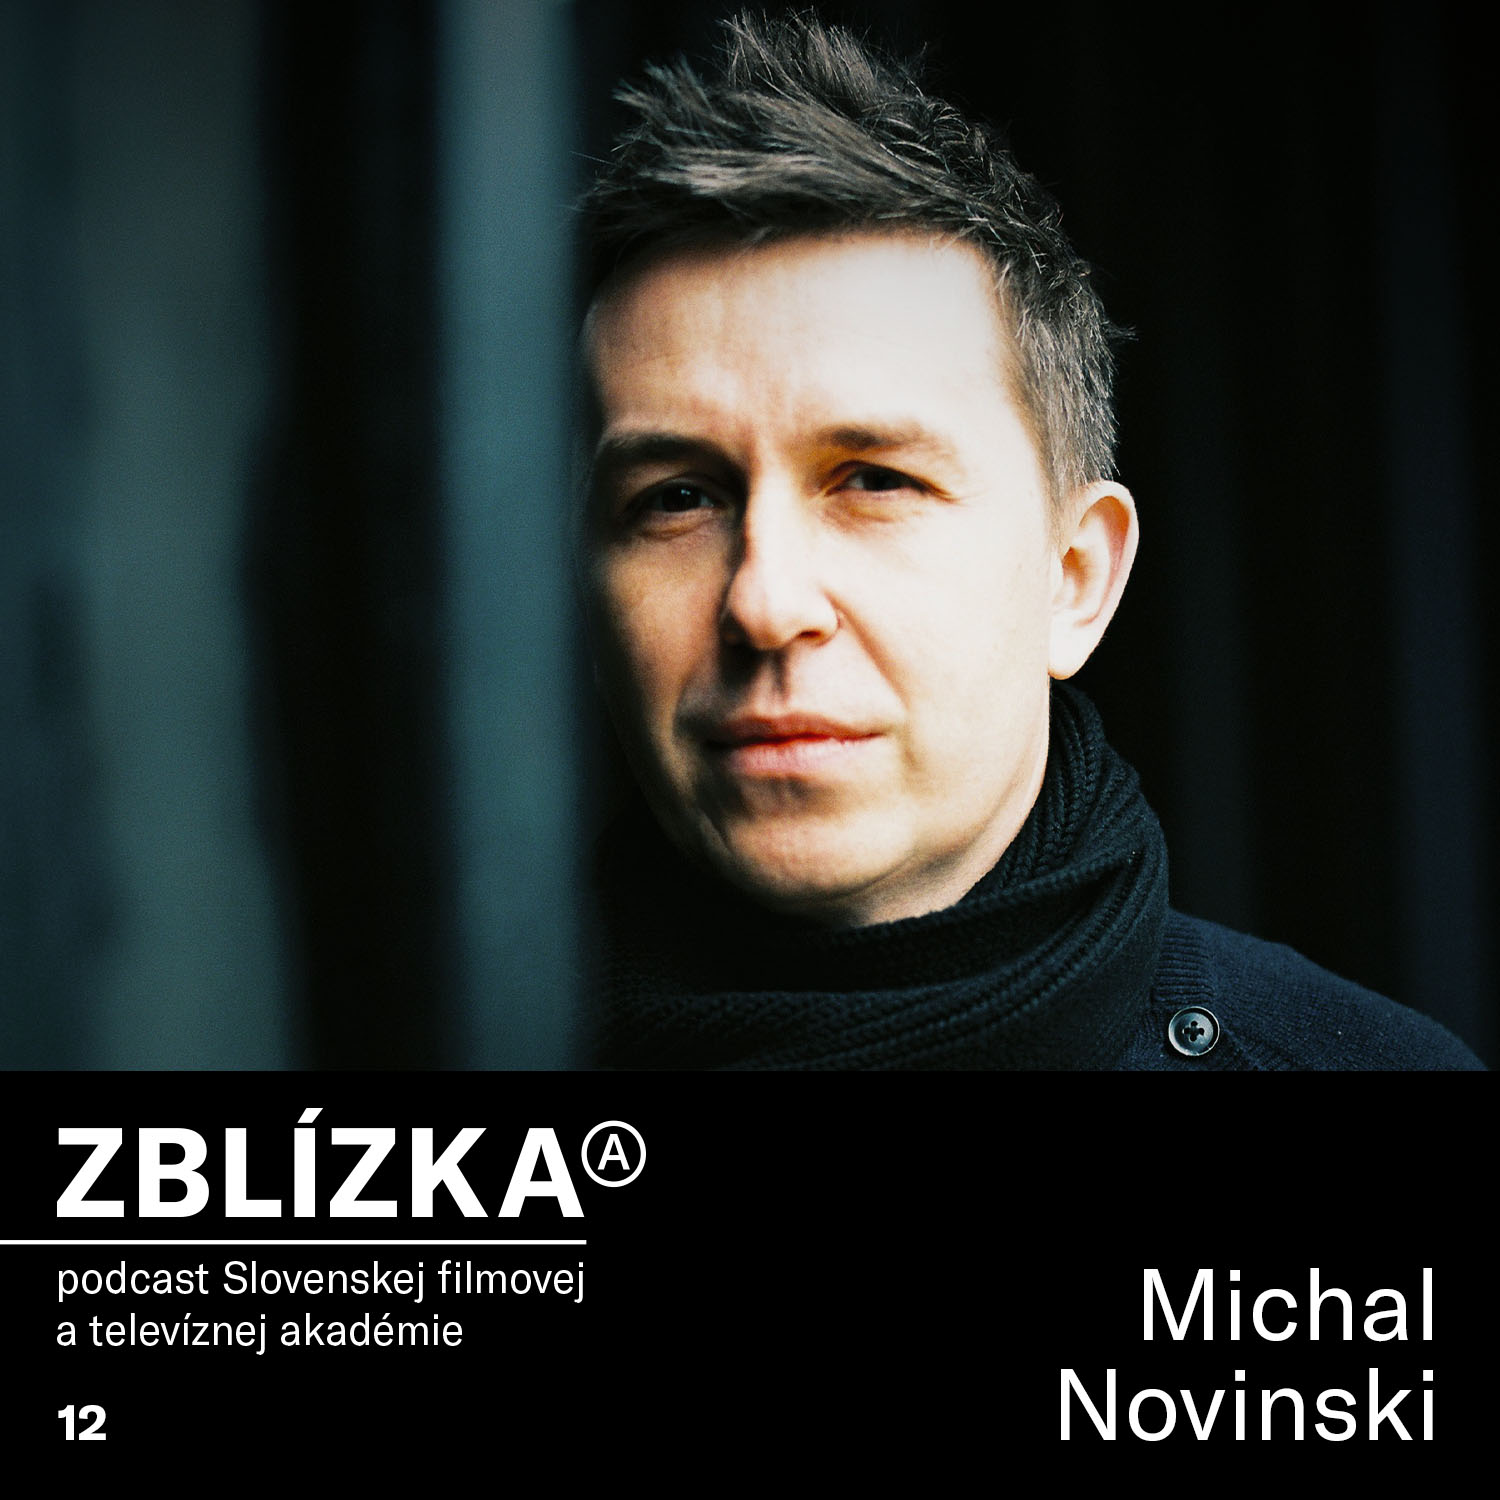 Michal Novinski: Chcel by som, aby bola práca čo najviac hrou